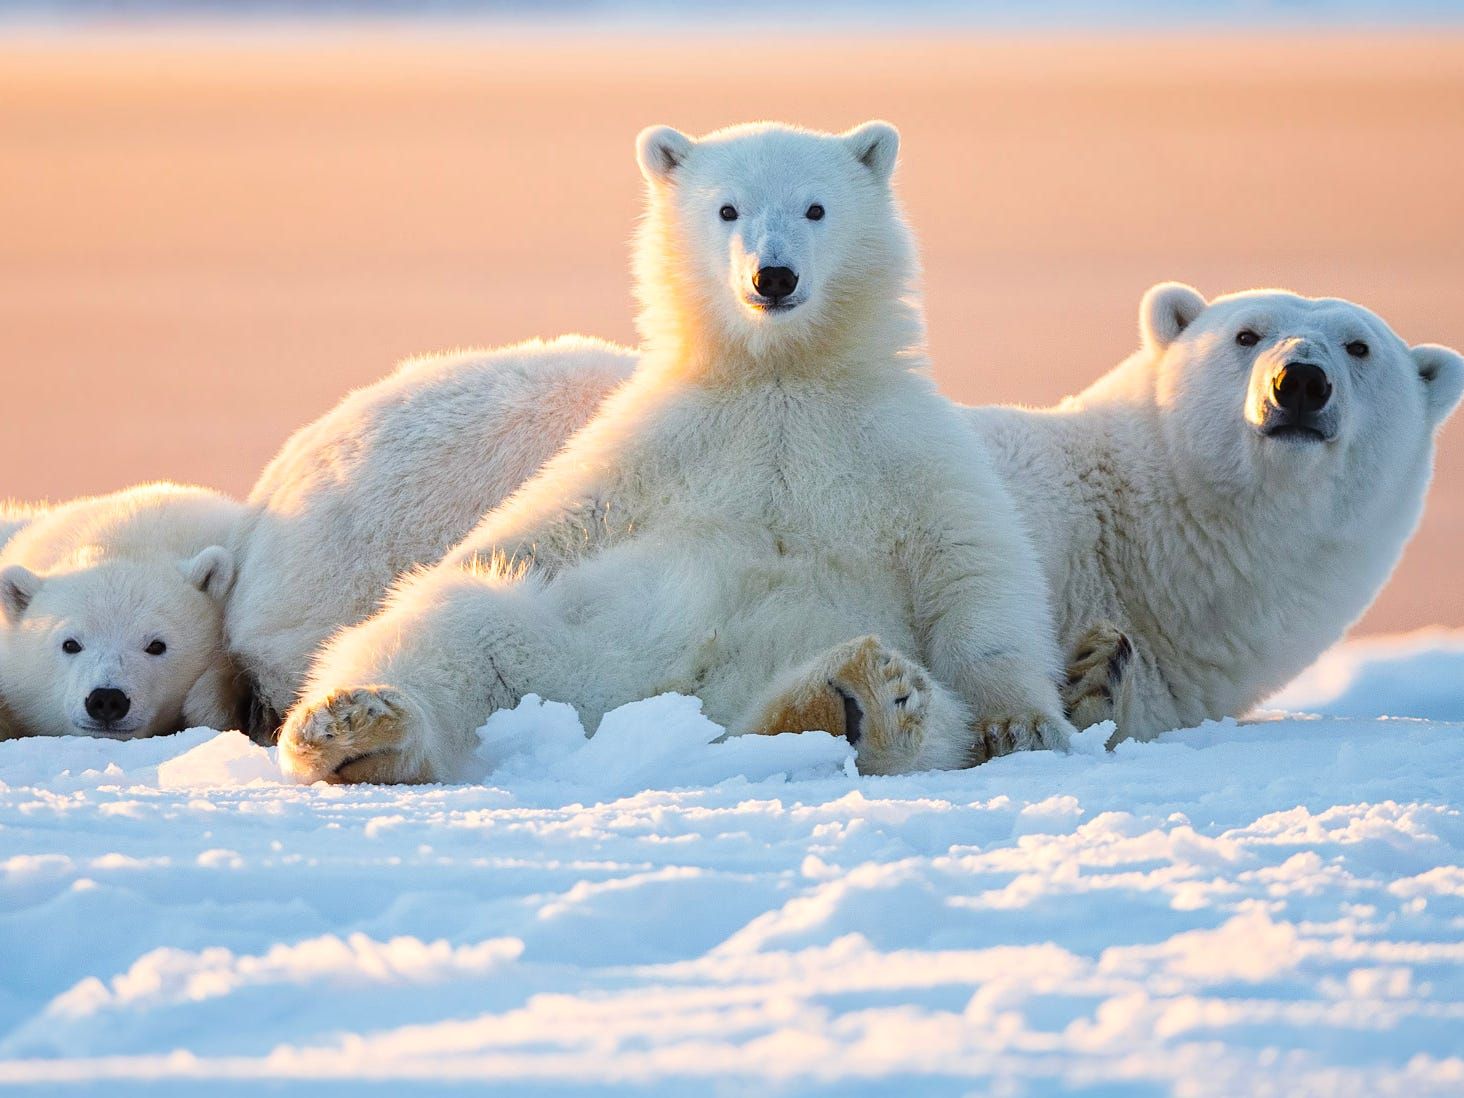 Nhiếp ảnh gấu bắc cực: Muốn ngắm nhìn gấu bắc cực trong trạng thái hoang dã và tự nhiên? Hãy xem những bức ảnh độc đáo về chúng được chụp bởi những nhiếp ảnh gia chuyên nghiệp.